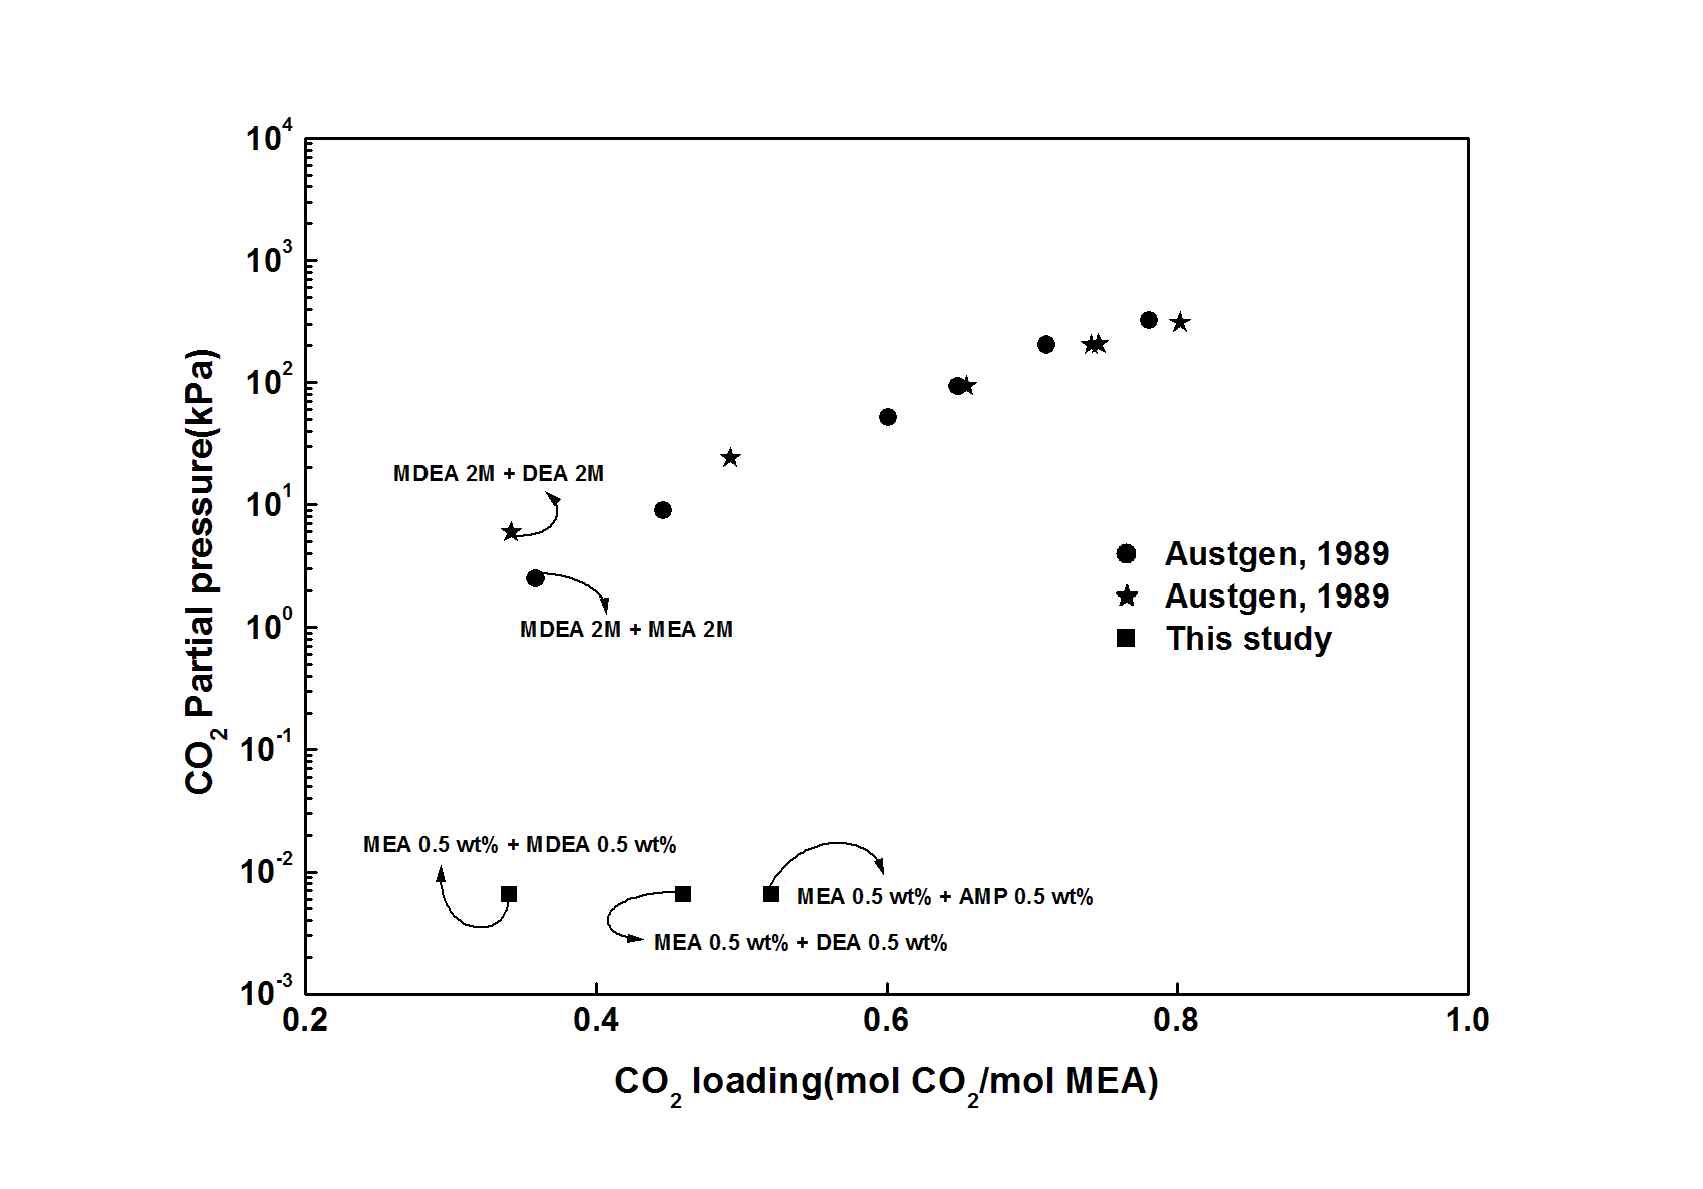 혼합흡수제의 분압 별 CO2 흡수량 비교